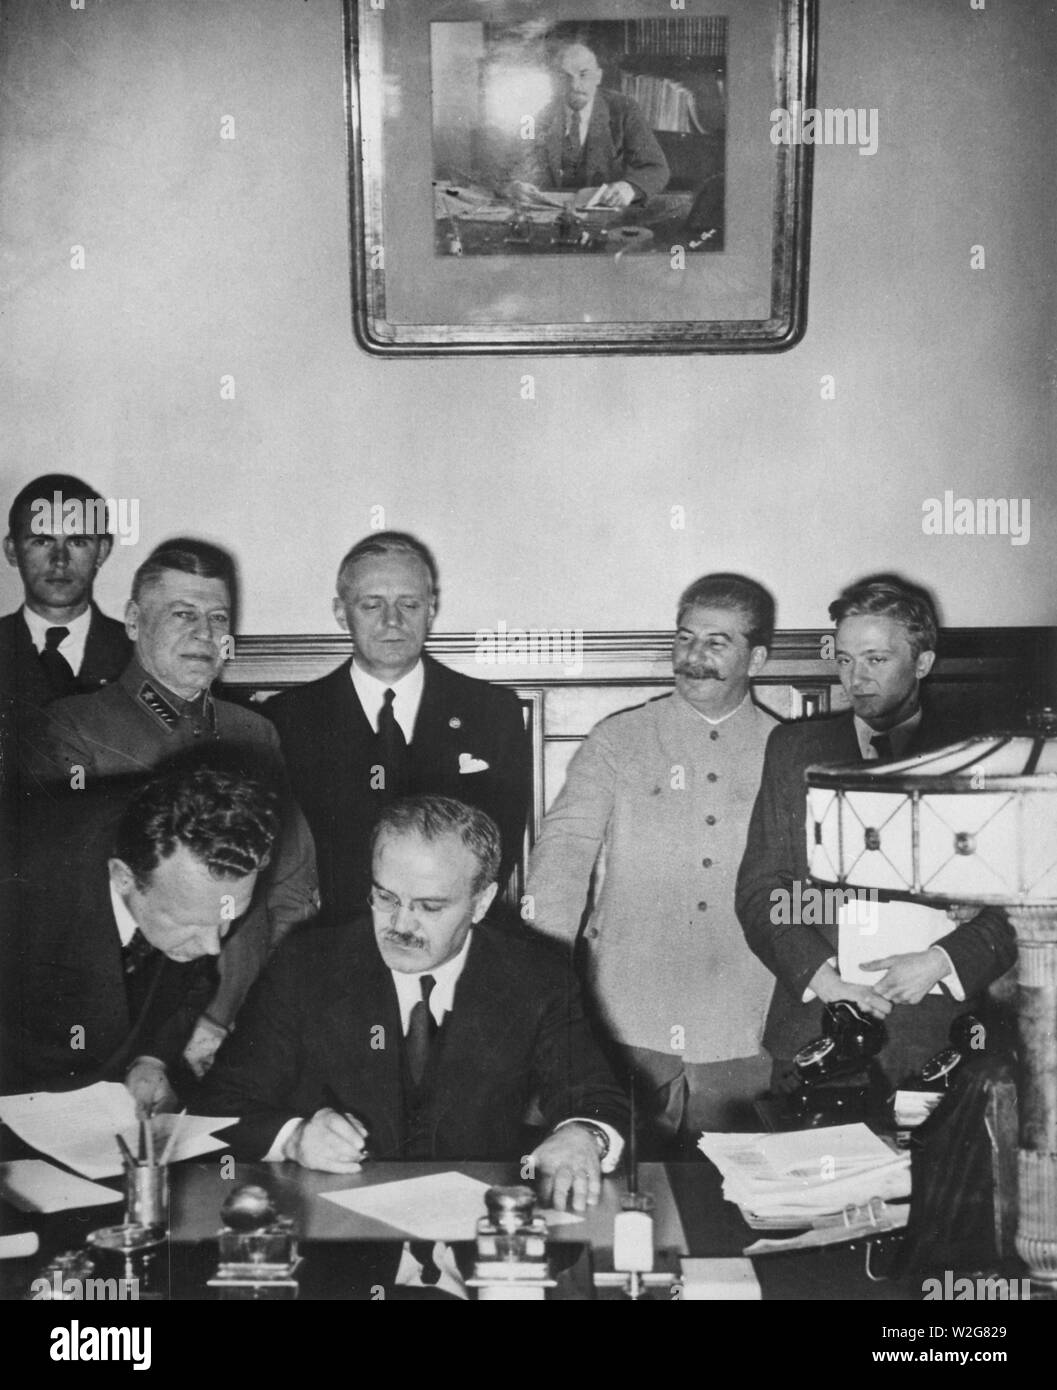 Trattato di Non-Aggression tra la Germania e l'Unione delle Repubbliche socialiste sovietiche, Mosca, 23 agosto 1939. Il Ministro degli esteri sovietico Vyacheslav Molotov segni. Foto Stock